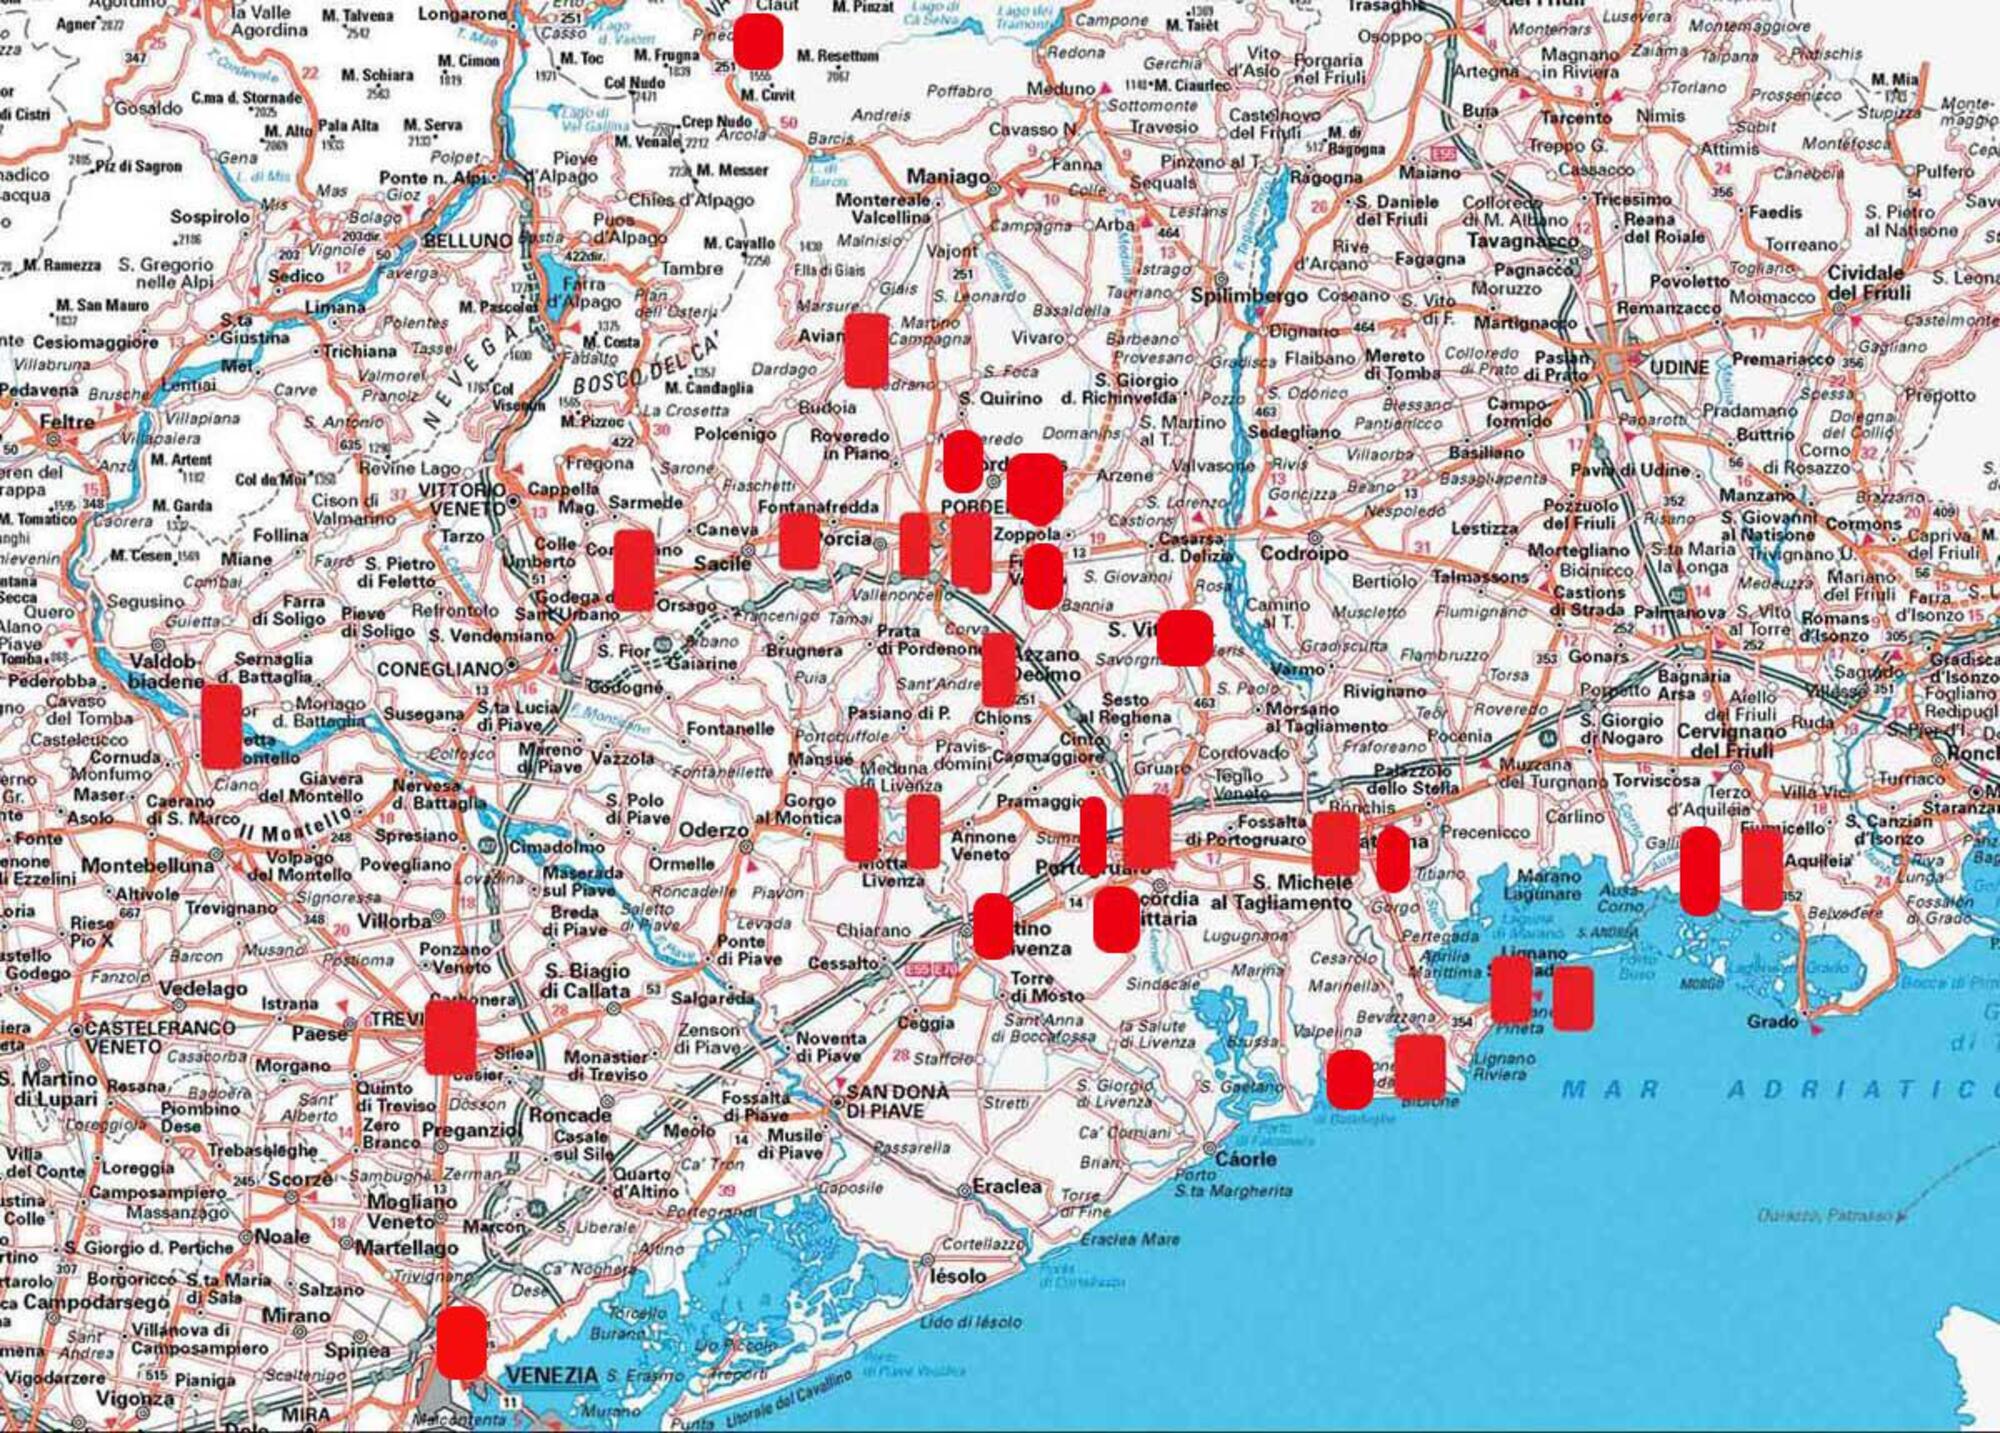 La mappa dei luoghi in cui ha colpito Unabomber